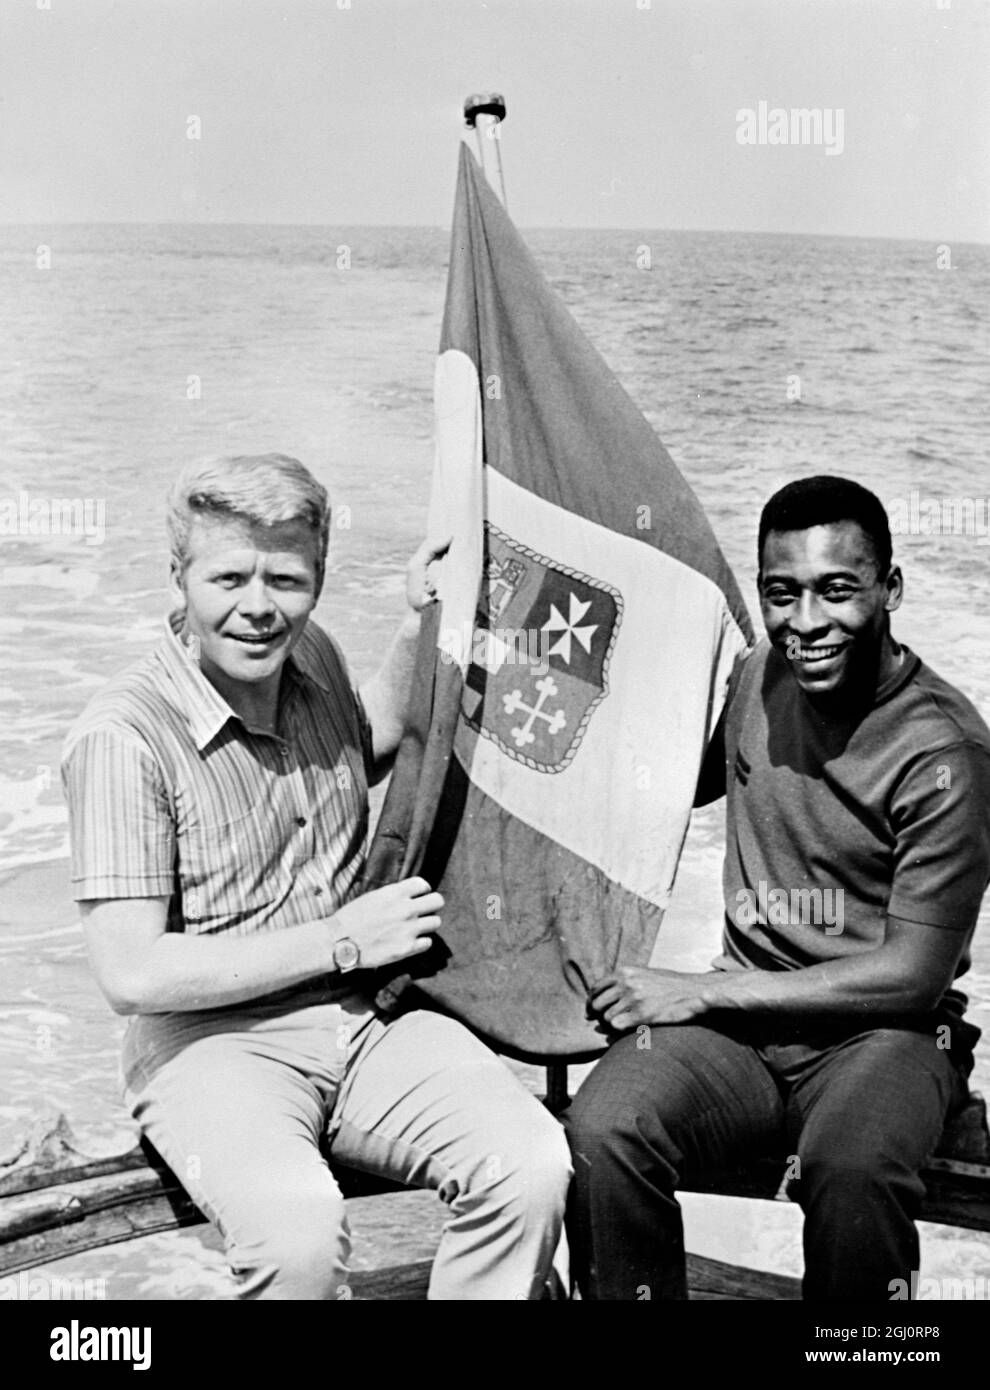 Deux des plus grands footballeurs au monde, Helmud Haller en Allemagne et Pele au Brésil. Se détendre sur un yacht loué par Haller qui joue pour l'équipe de Bologne en Italie. Riccione, Italie - 20 juillet 1967 Banque D'Images